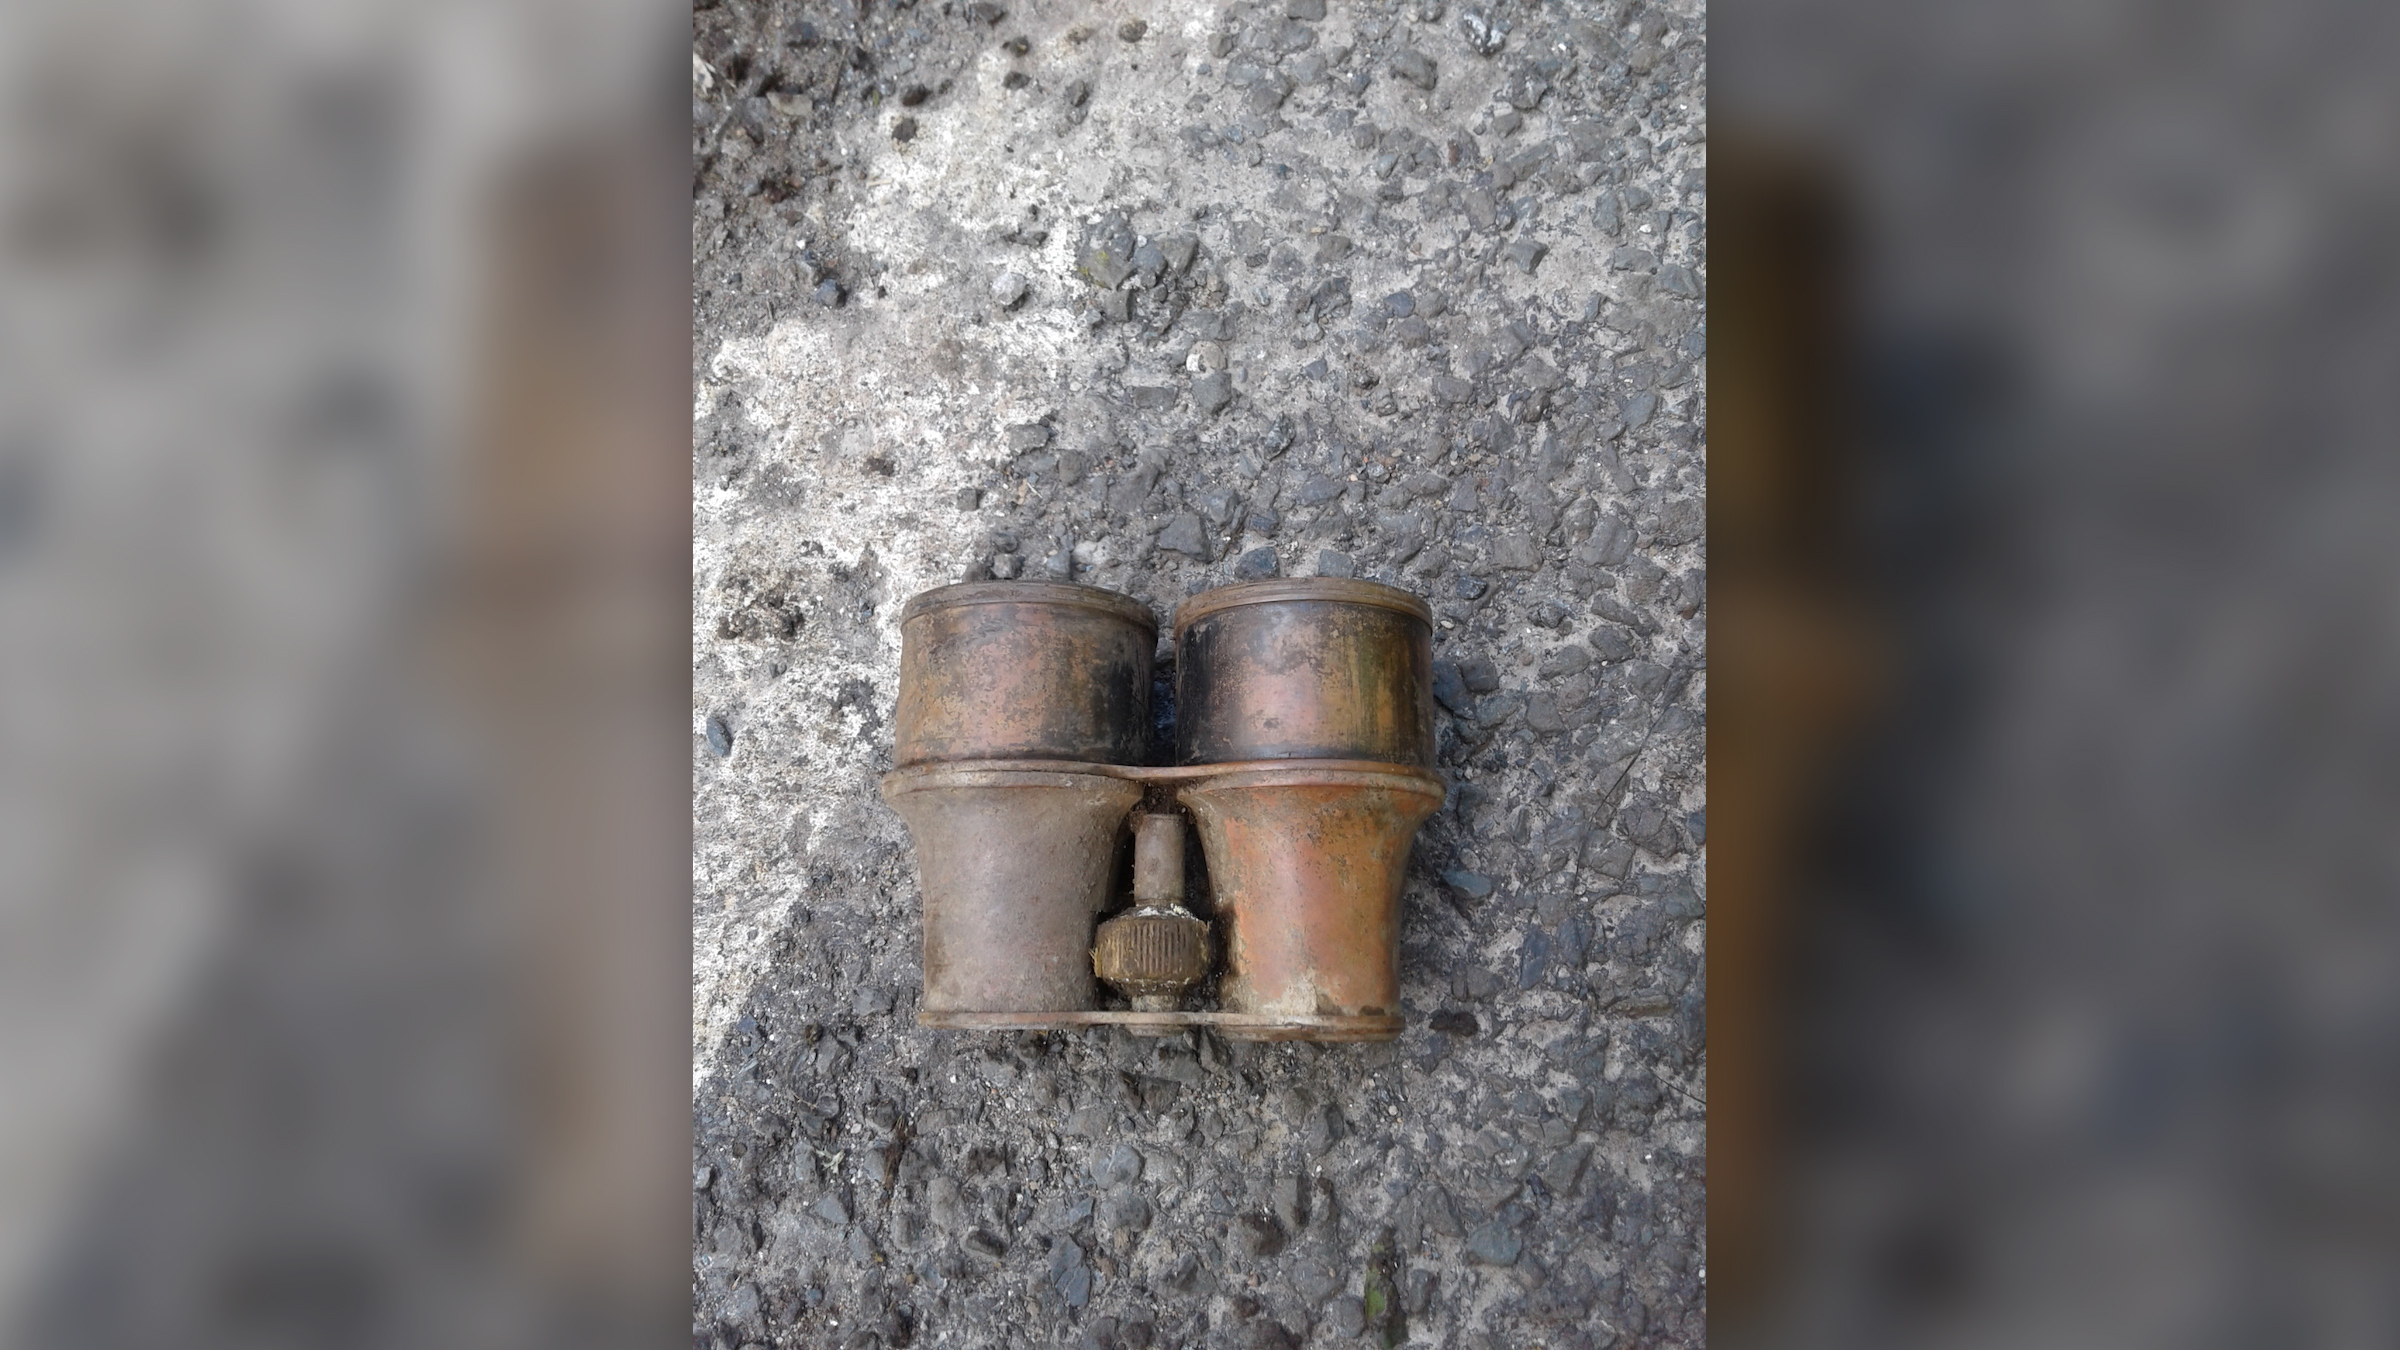 Binoculars found at 5 Mile Lane date to World War II.